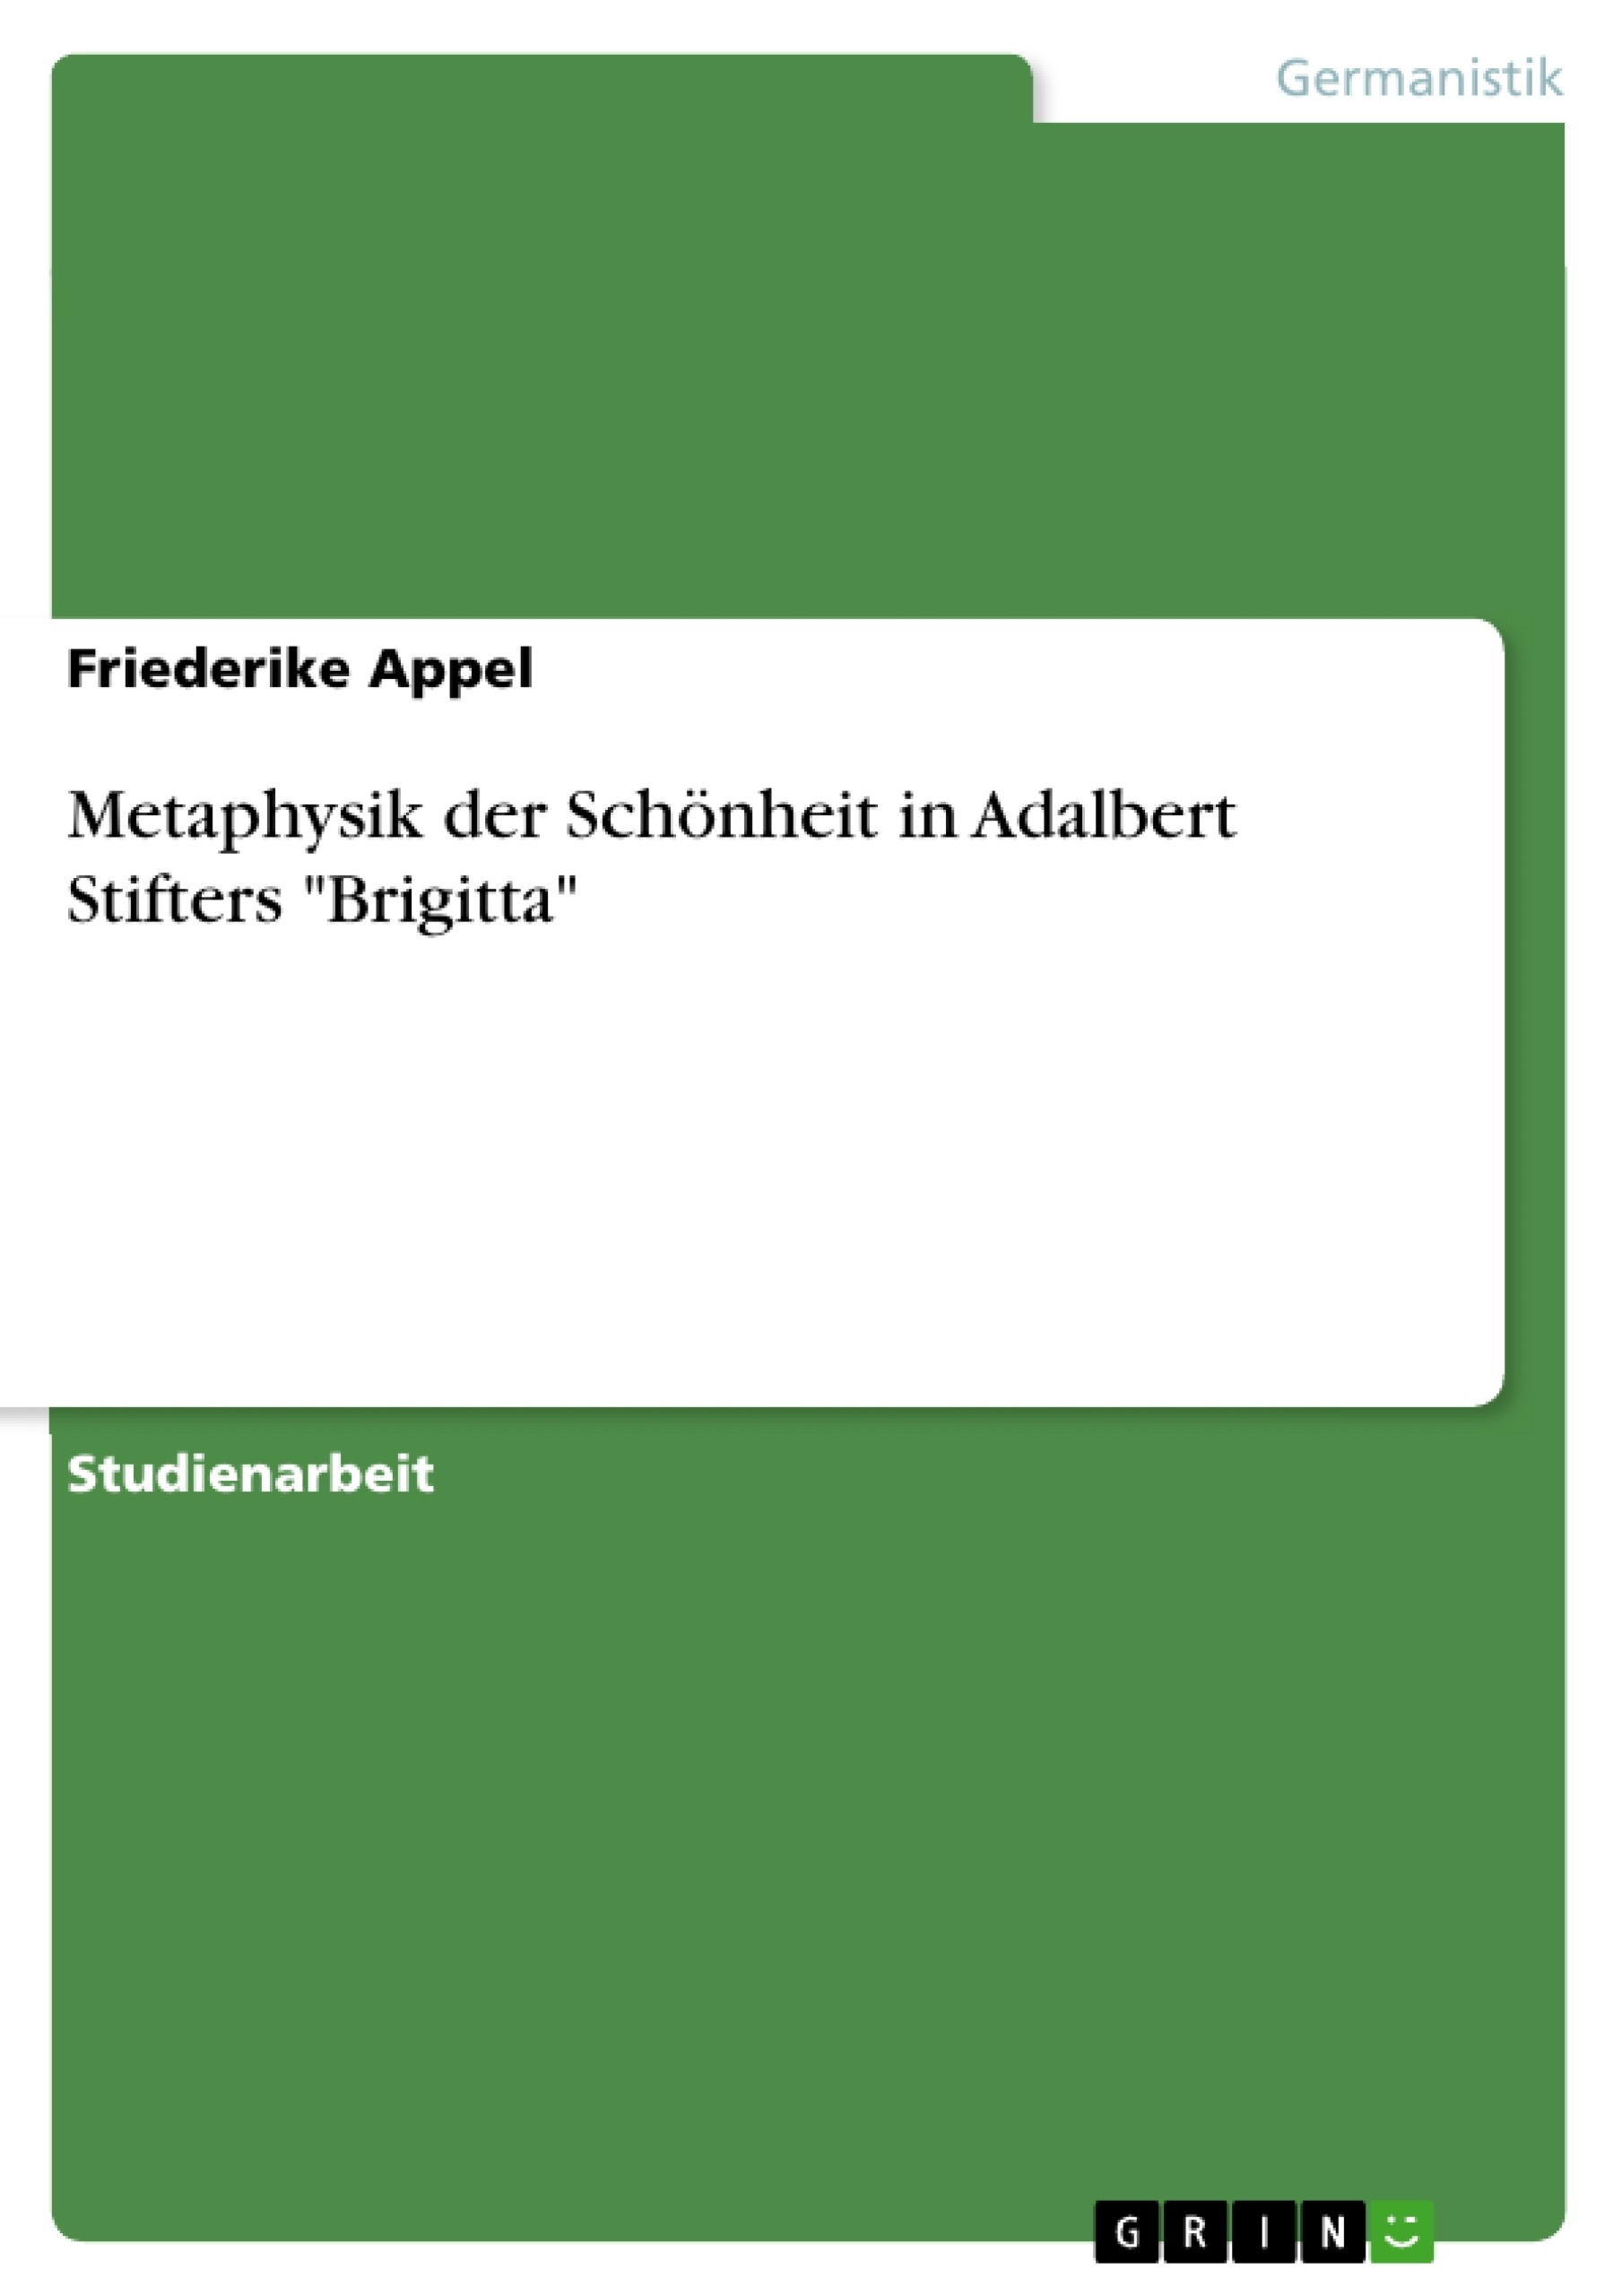 Título: Metaphysik der Schönheit in Adalbert Stifters "Brigitta"